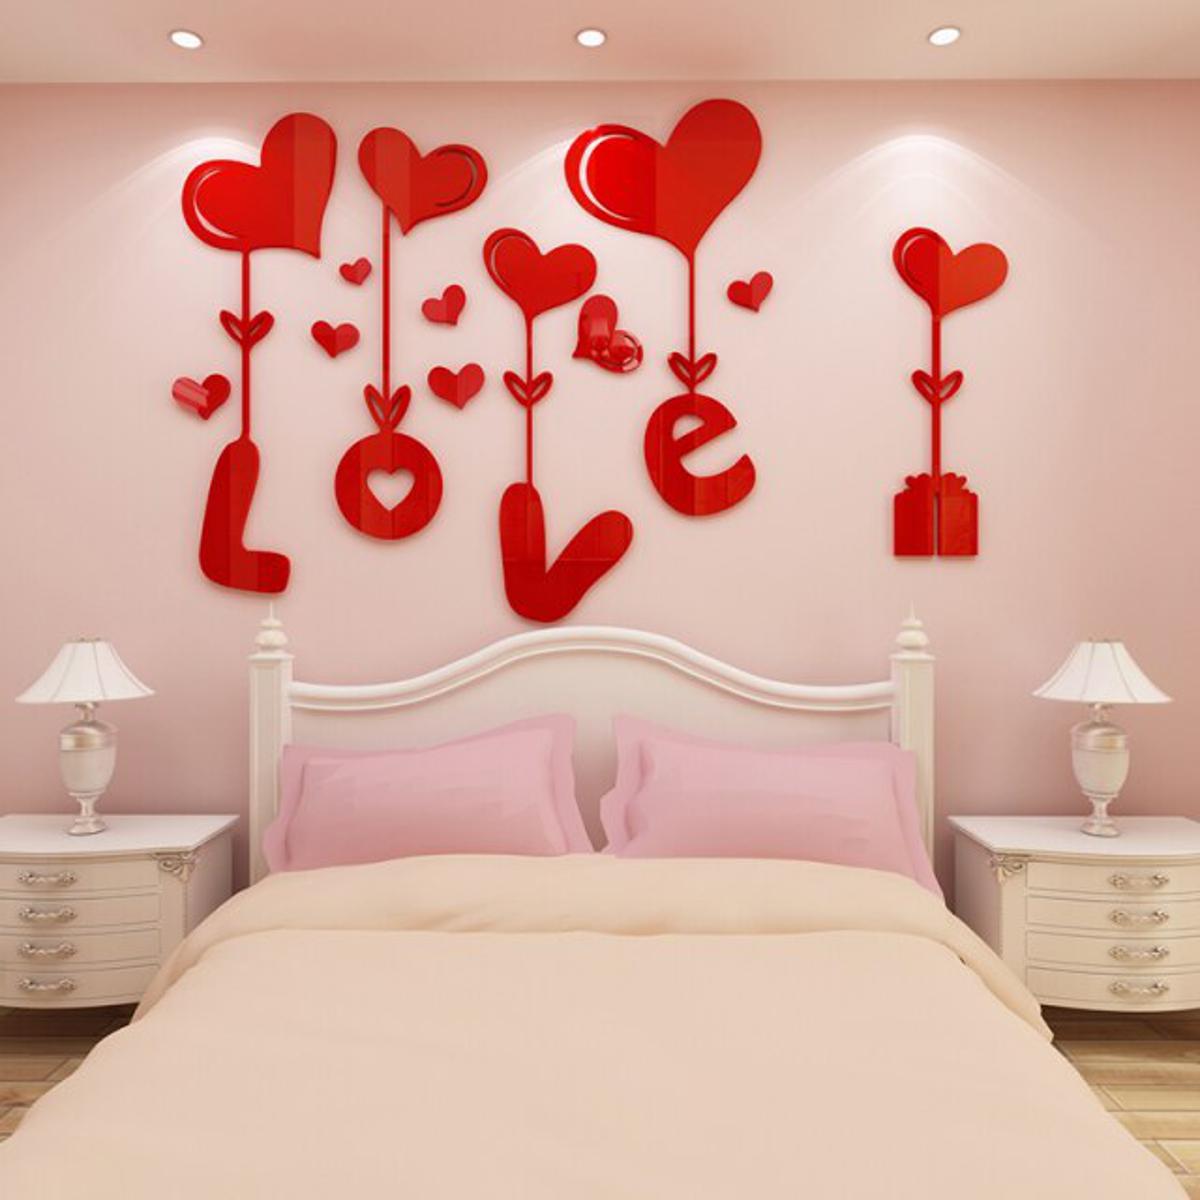 62,102 Bedroom Wallpaper Images, Stock Photos & Vectors | Shutterstock